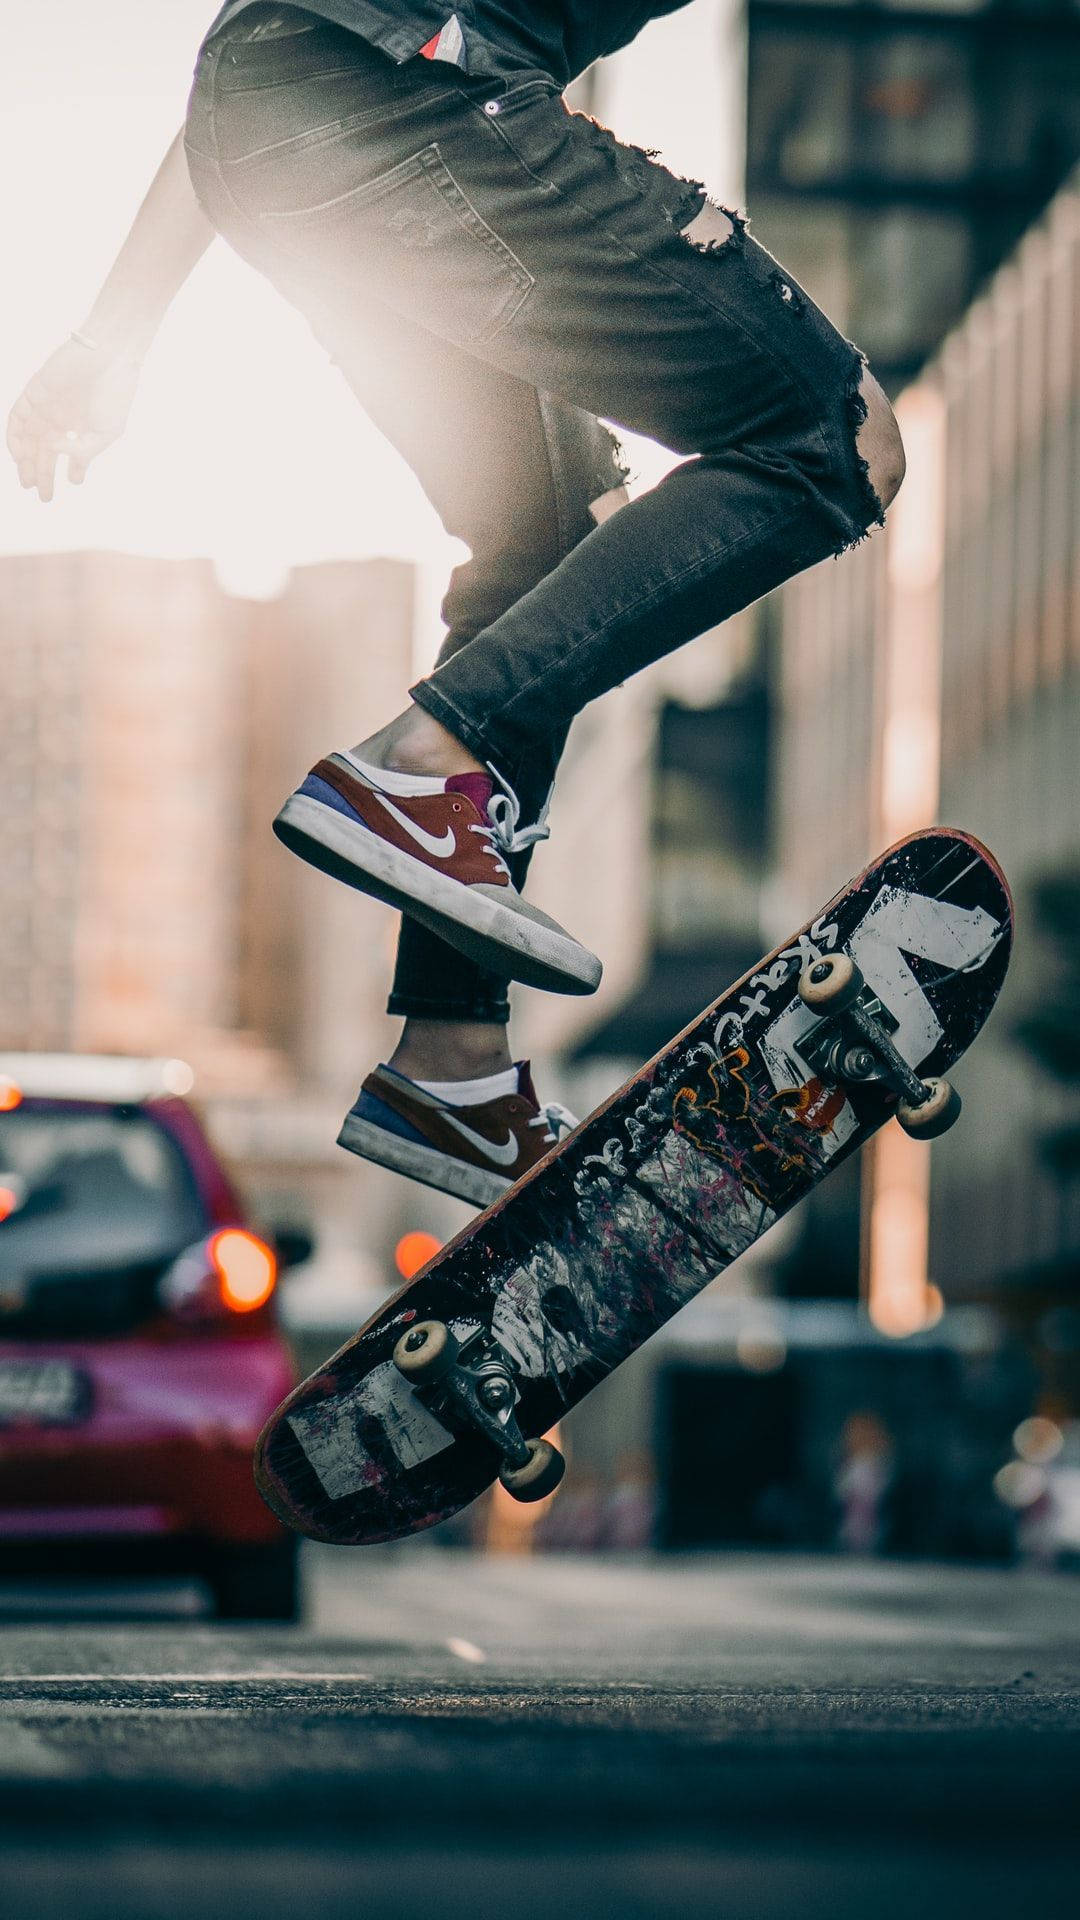 Skateboard Stunt On The Road Skater Aesthetic Background